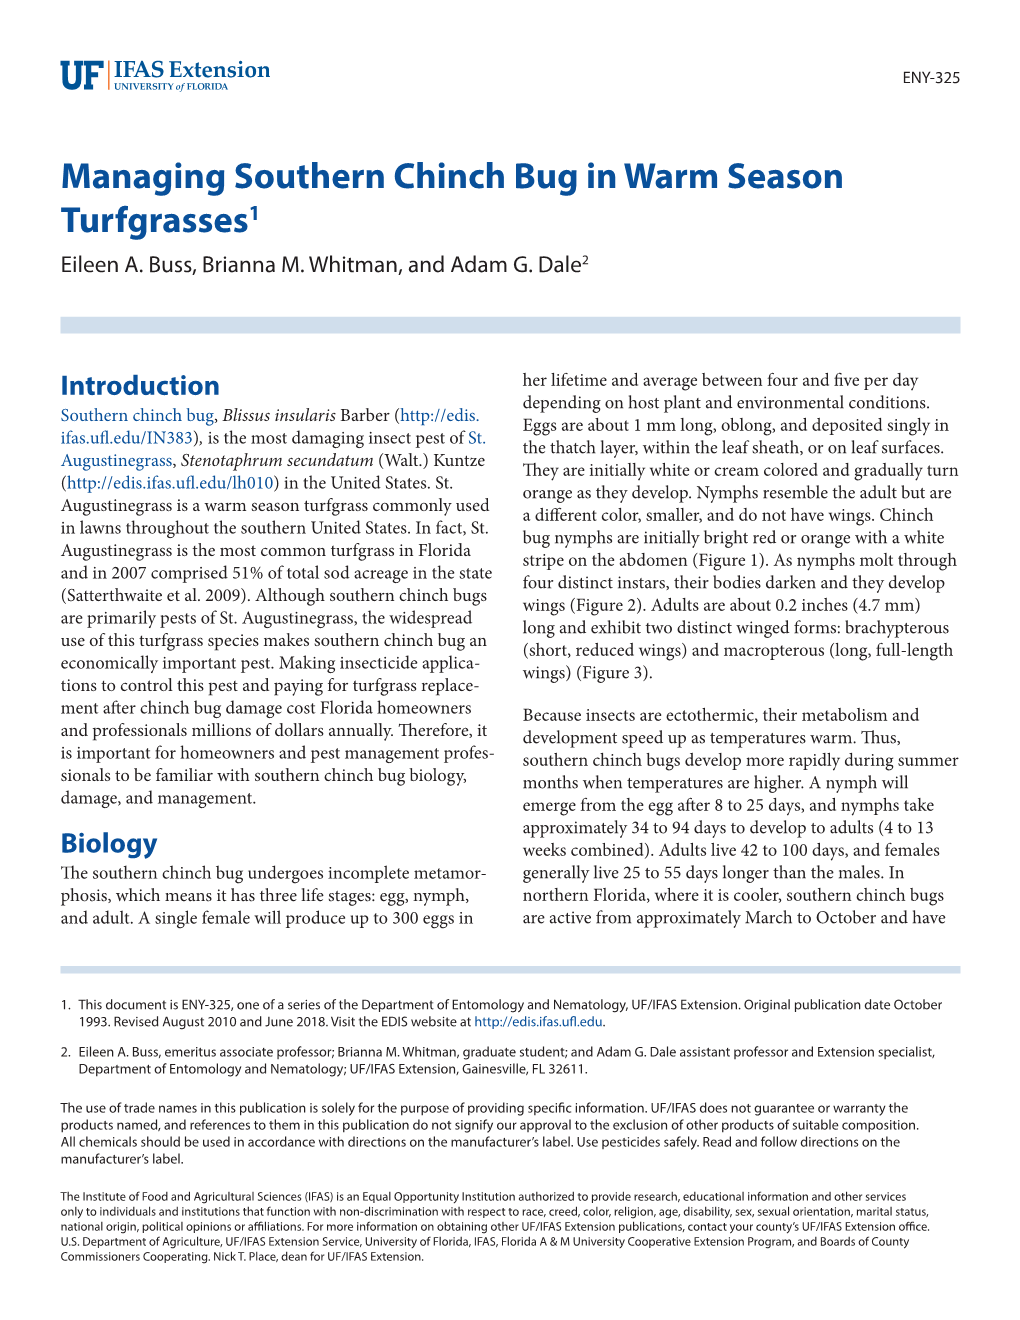 Chinch Bug in Warm Season Turfgrasses1 Eileen A